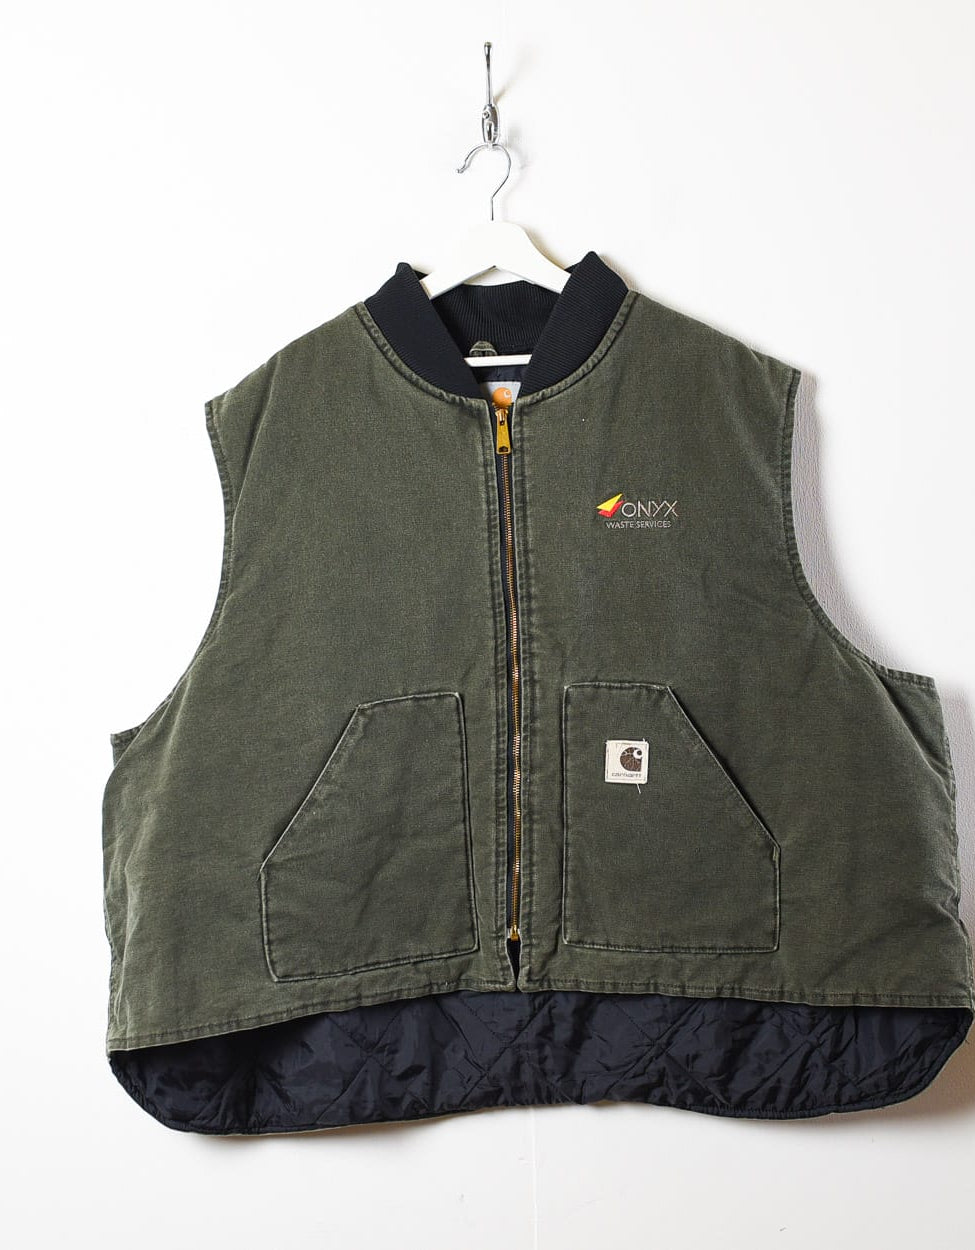 Khaki Carhartt Workwear Jacket Vest - XXXXX-Large